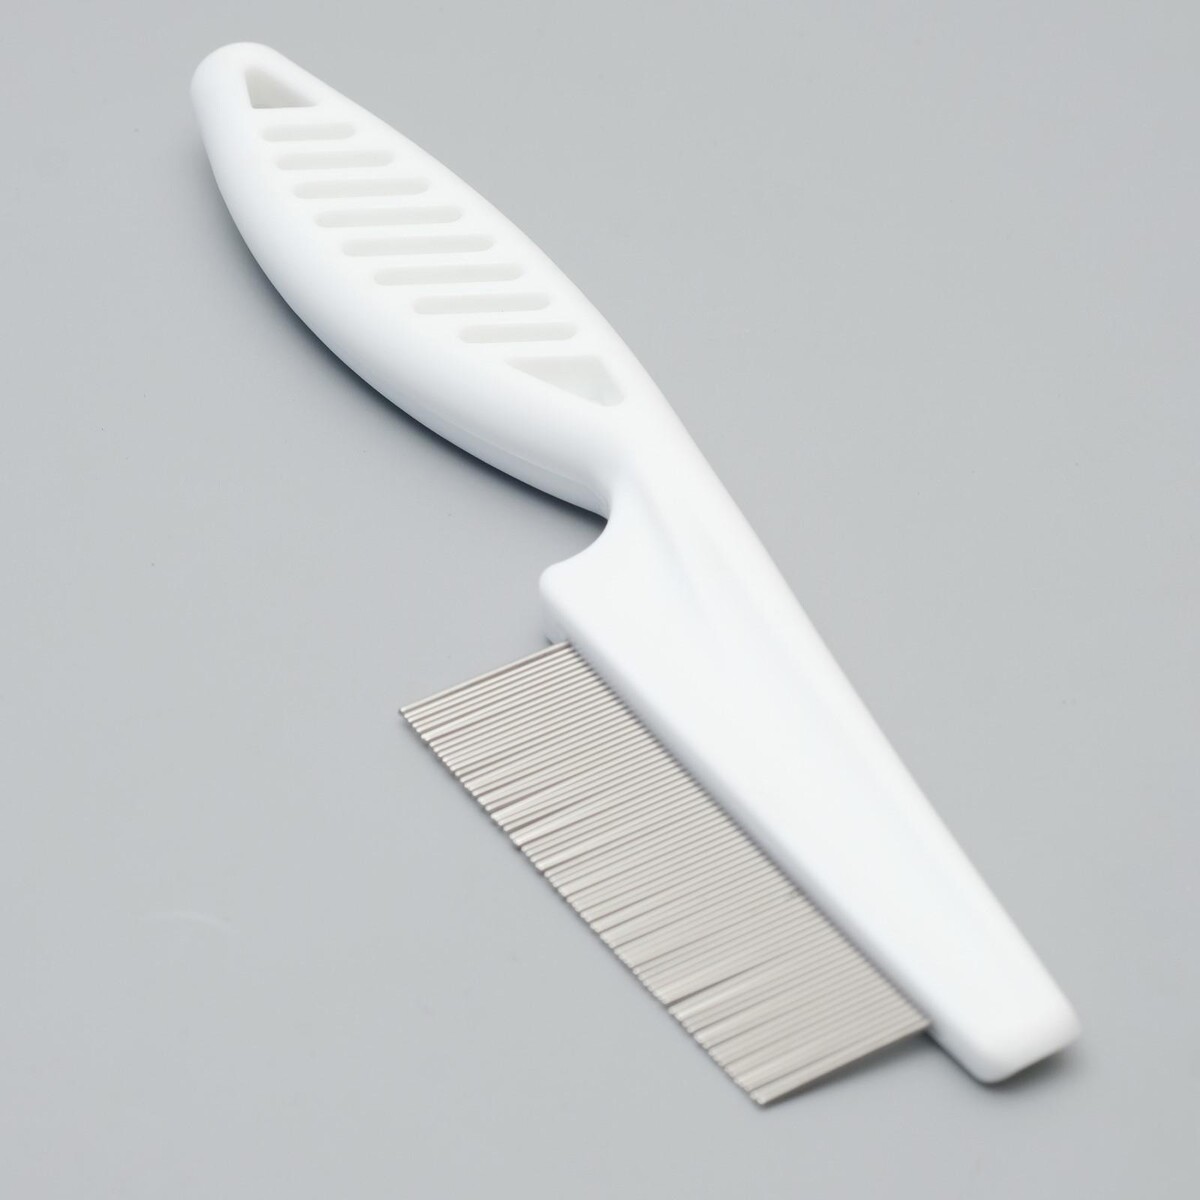 Расческа с частыми зубьями, 18 см, пластиковая ручка, белая расческа массажная с пластик зубьями малая 21см 301 001 8